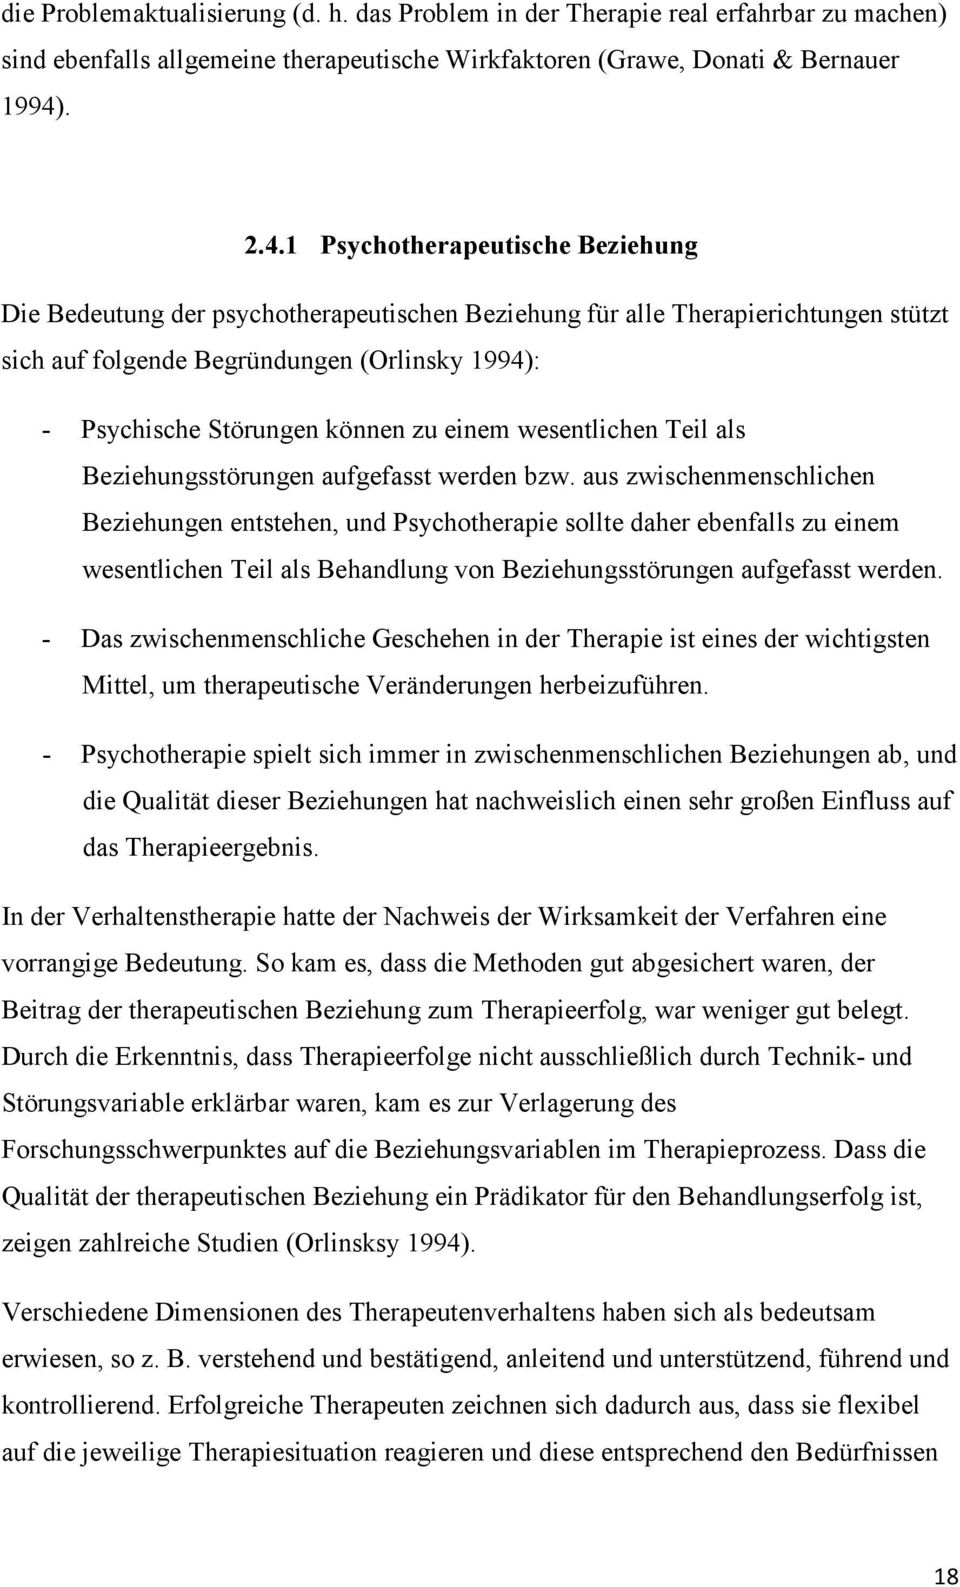 1 Psychotherapeutische Beziehung Die Bedeutung der psychotherapeutischen Beziehung für alle Therapierichtungen stützt sich auf folgende Begründungen (Orlinsky 1994): - Psychische Störungen können zu